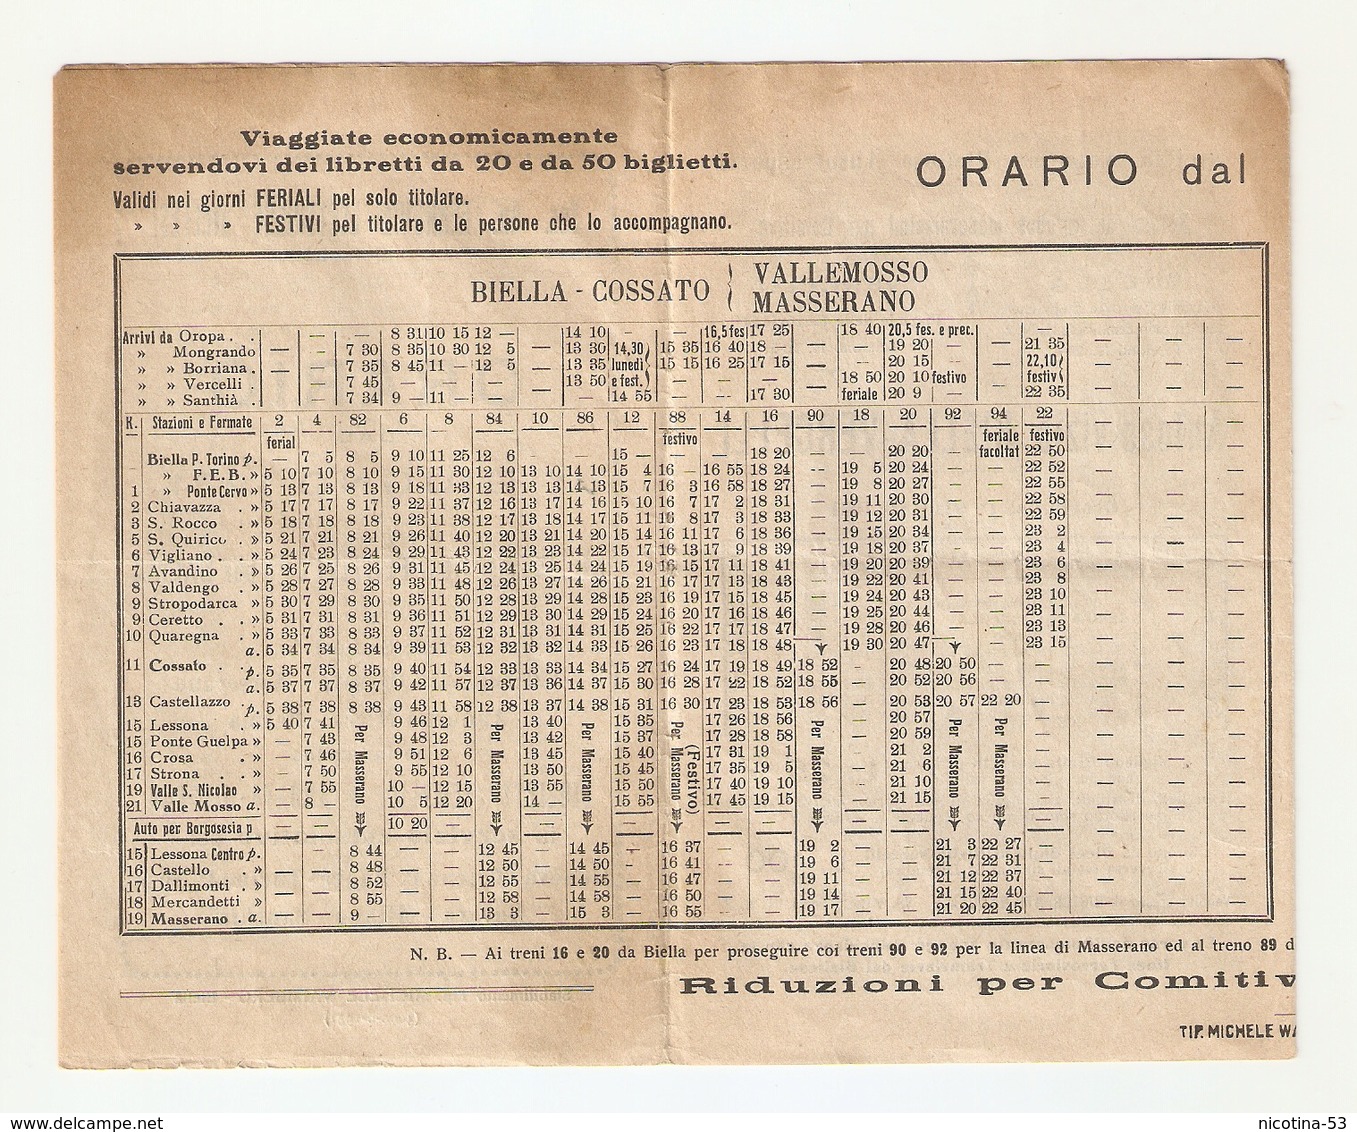 OR--0002-- ORARIO DAL 01/06/1931- SOC.ANONIMA FERROVIE ELETTRICHE BIELLESI- - Europa